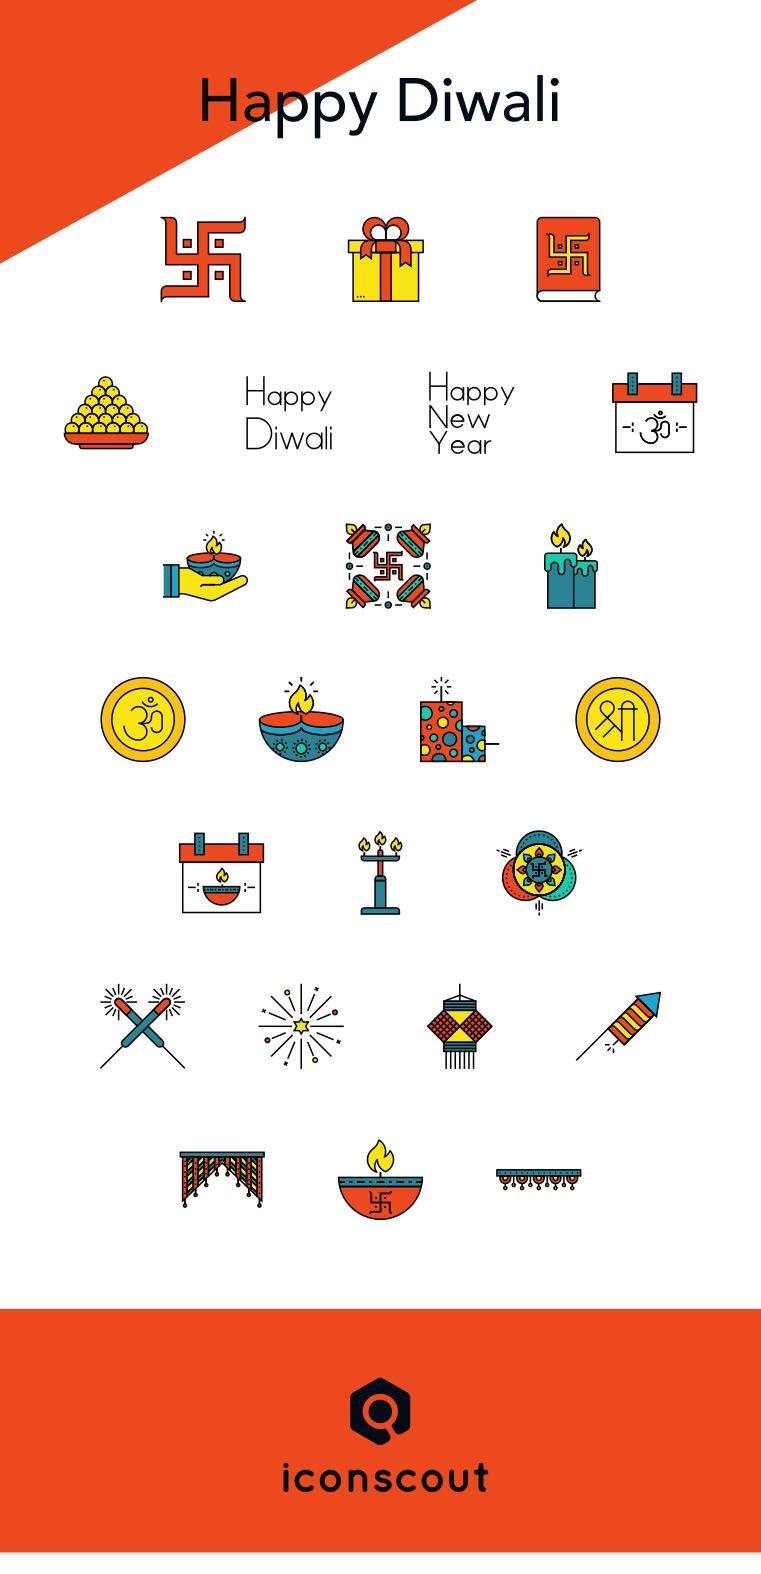 Diwali Deepawali festival Icon icons iconpack iconset ILLUSTRATION  culture